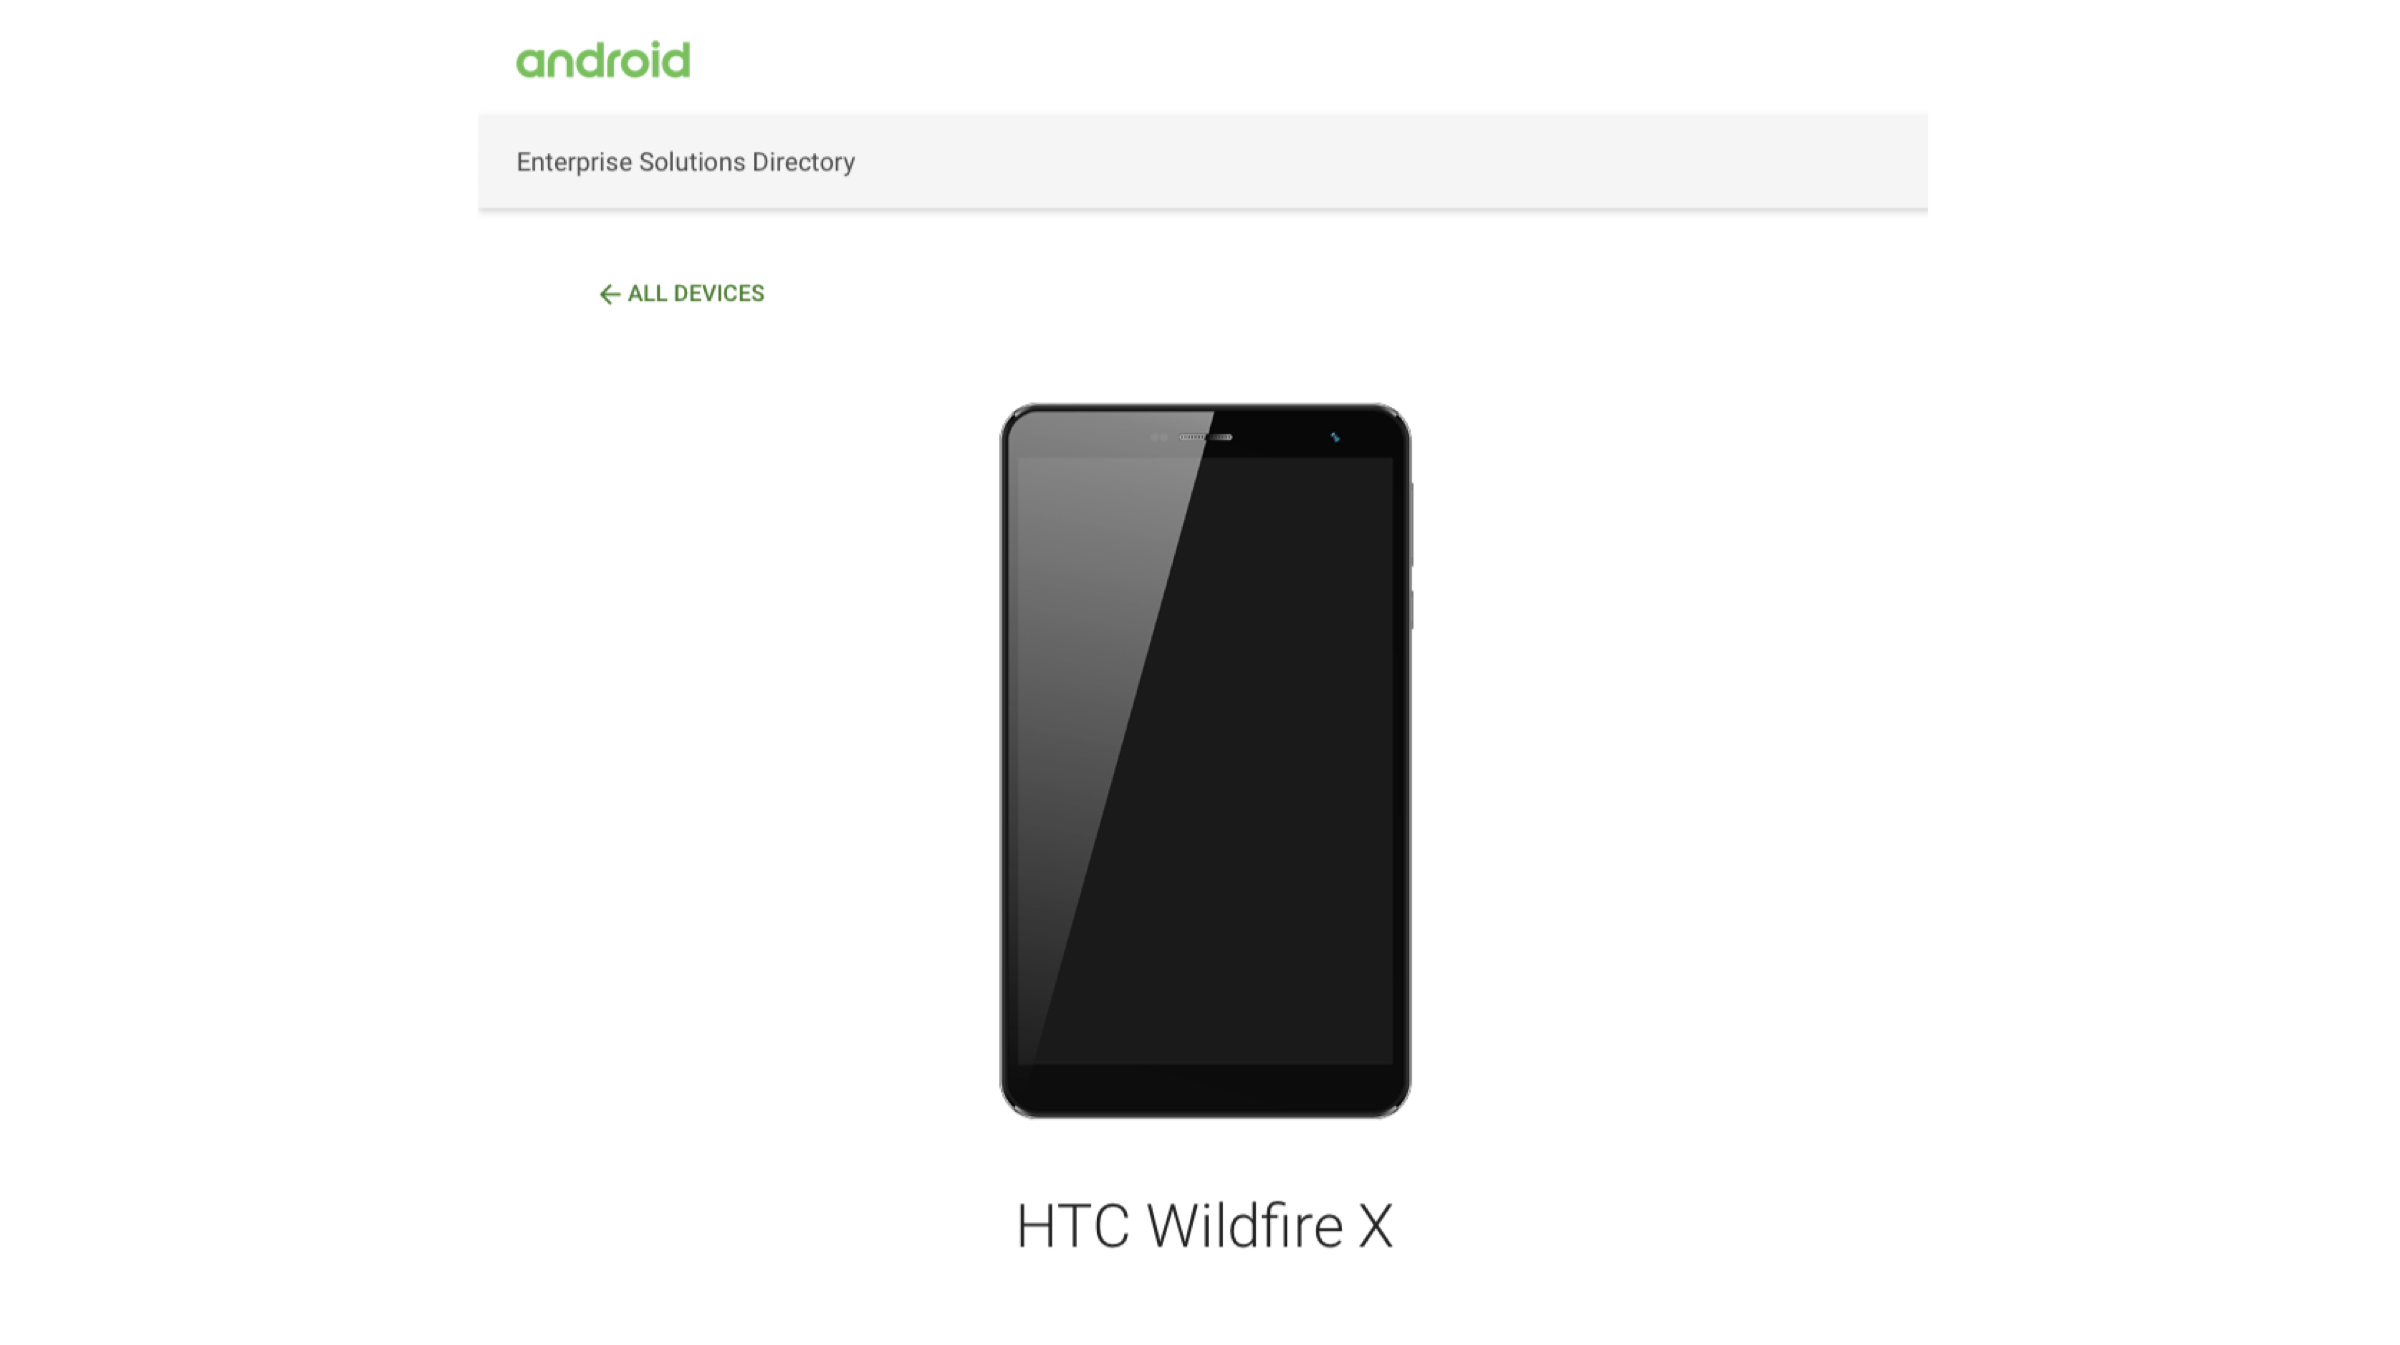 HTC Wildfire X Terdaftar Di Situs Web Android Enterprise, Diharapkan Segera Diluncurkan 1